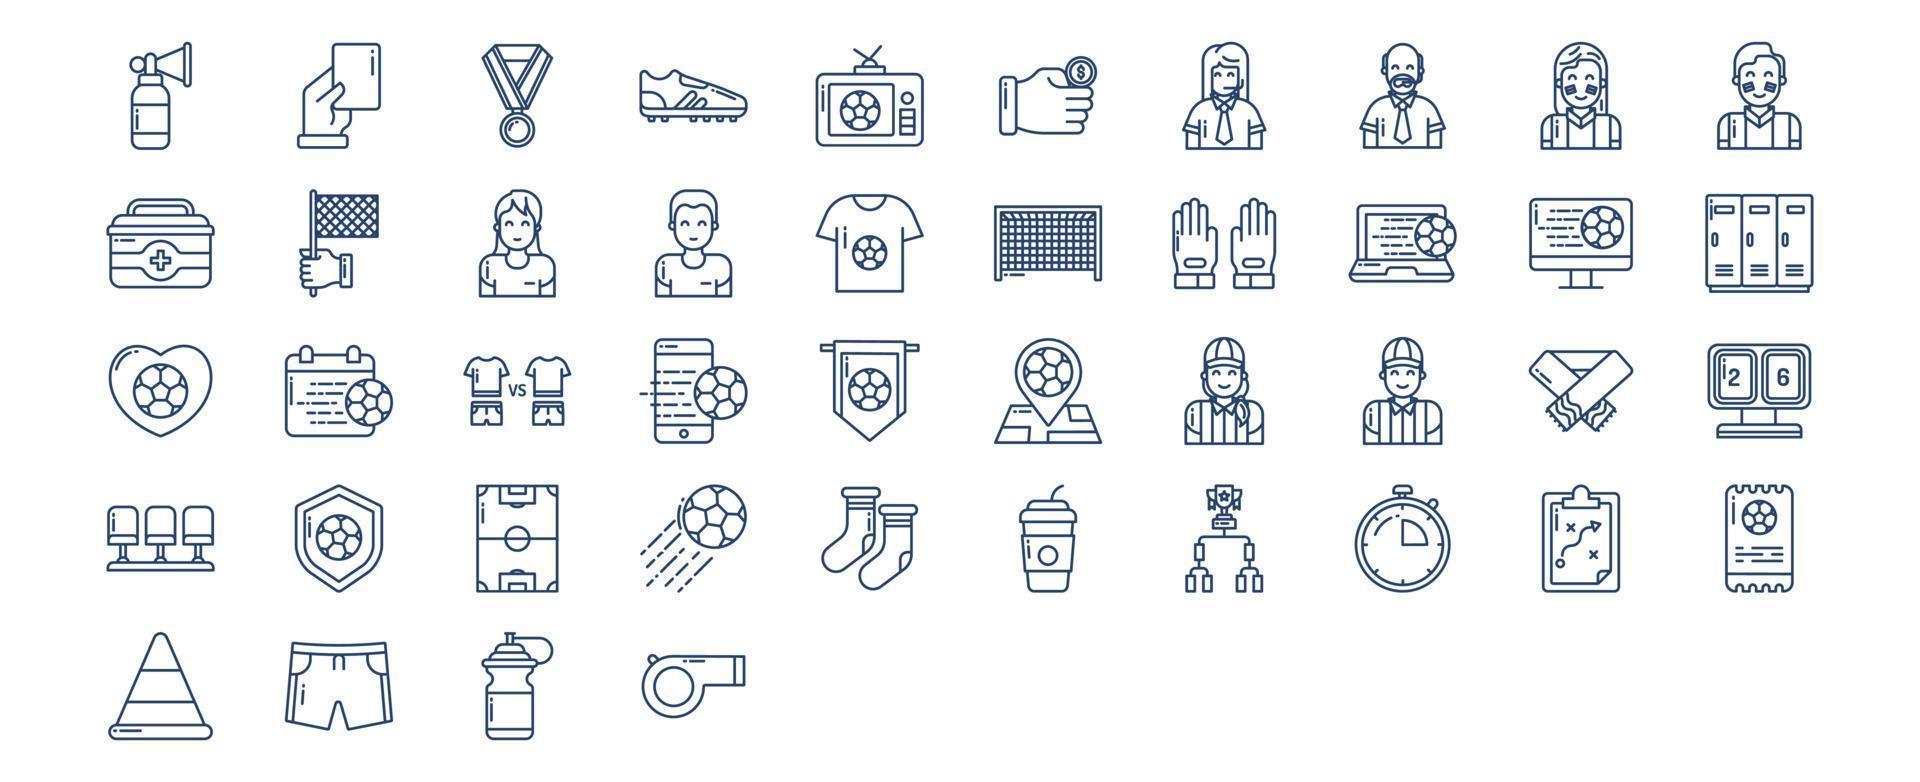 verzameling van pictogrammen verwant naar Amerikaans voetbal en voetbal, inclusief pictogrammen Leuk vinden voetbal bal, wedstrijd, laarzen, spel en meer. vector illustraties, pixel perfect reeks